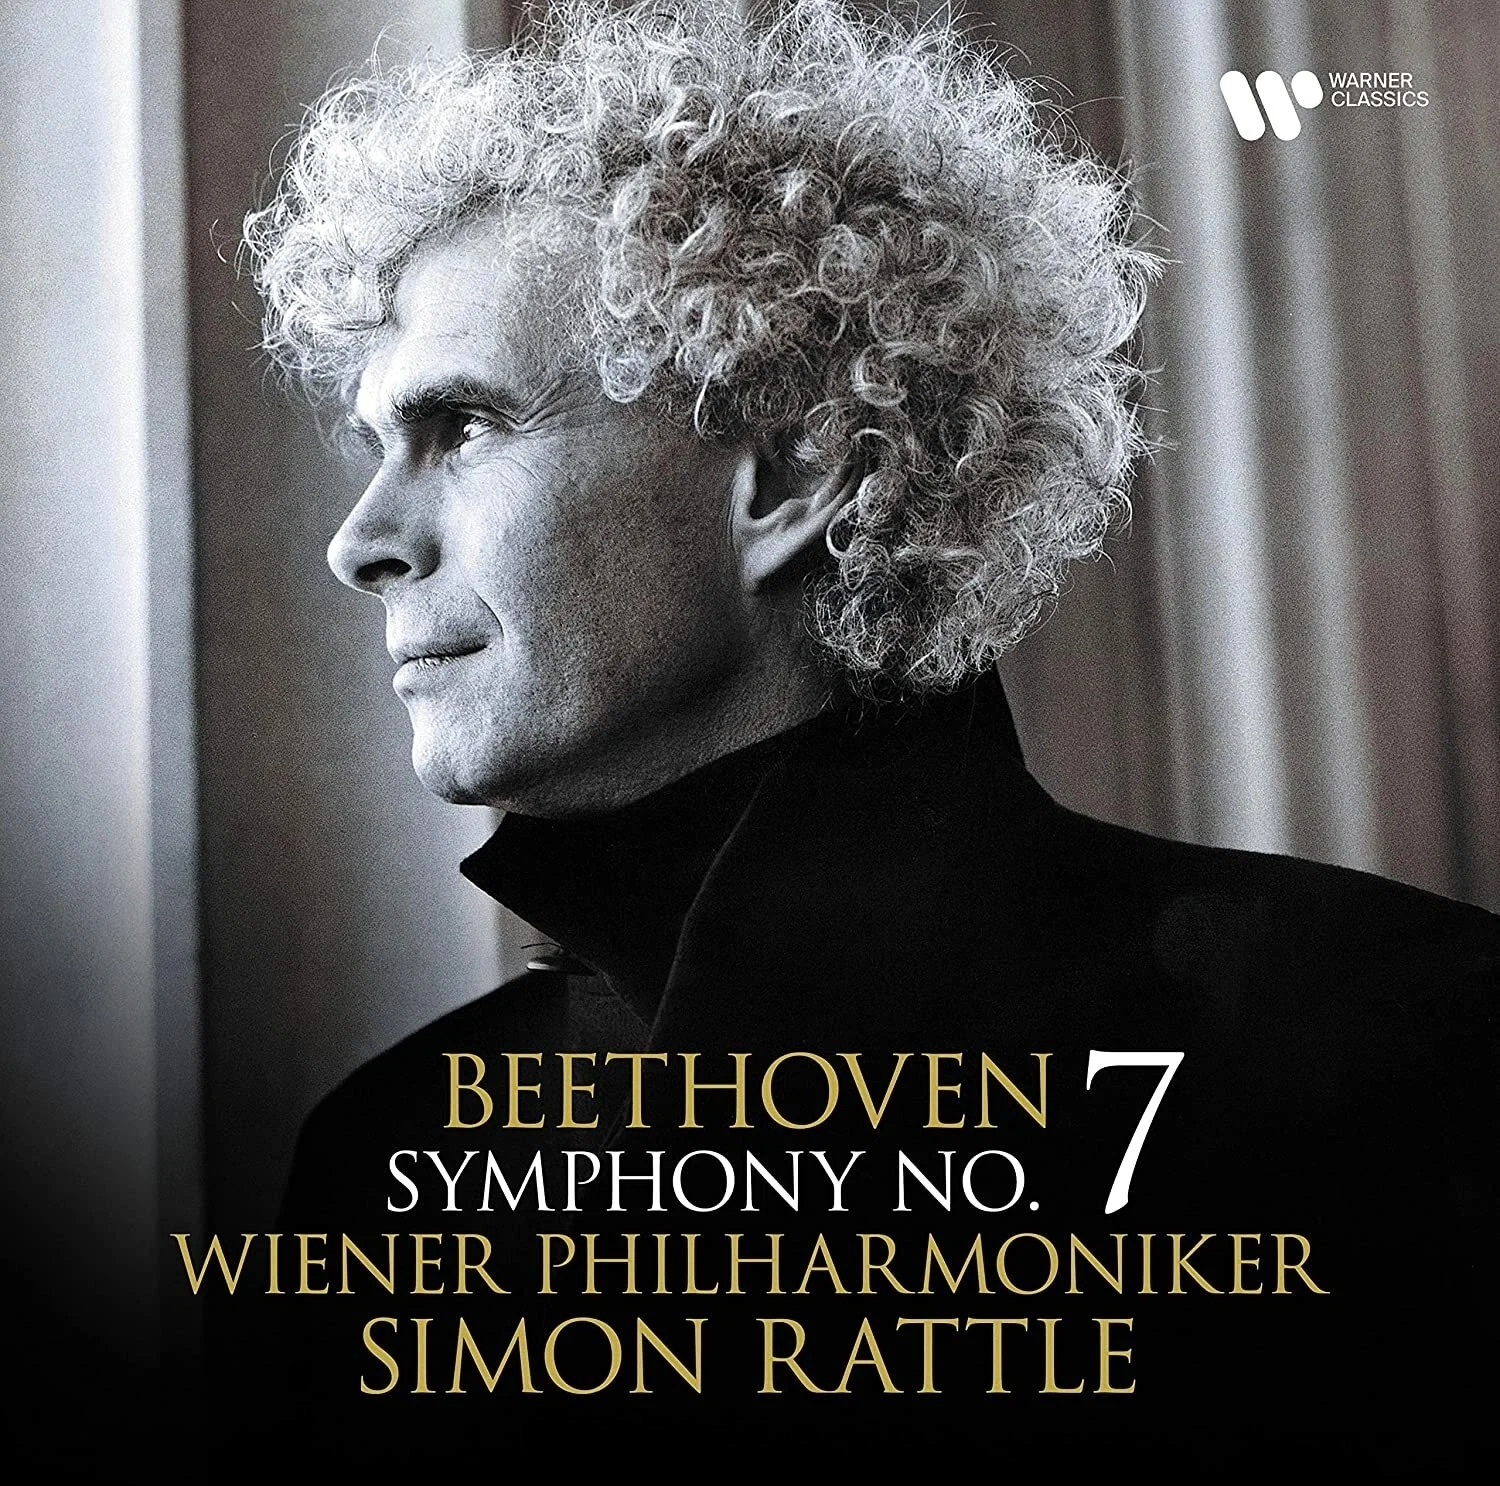 Виниловая Пластинка Rattle, Simon / Wiener Philharmoniker, Beethoven: Symphony No. 7 (5054197376481) цена и фото